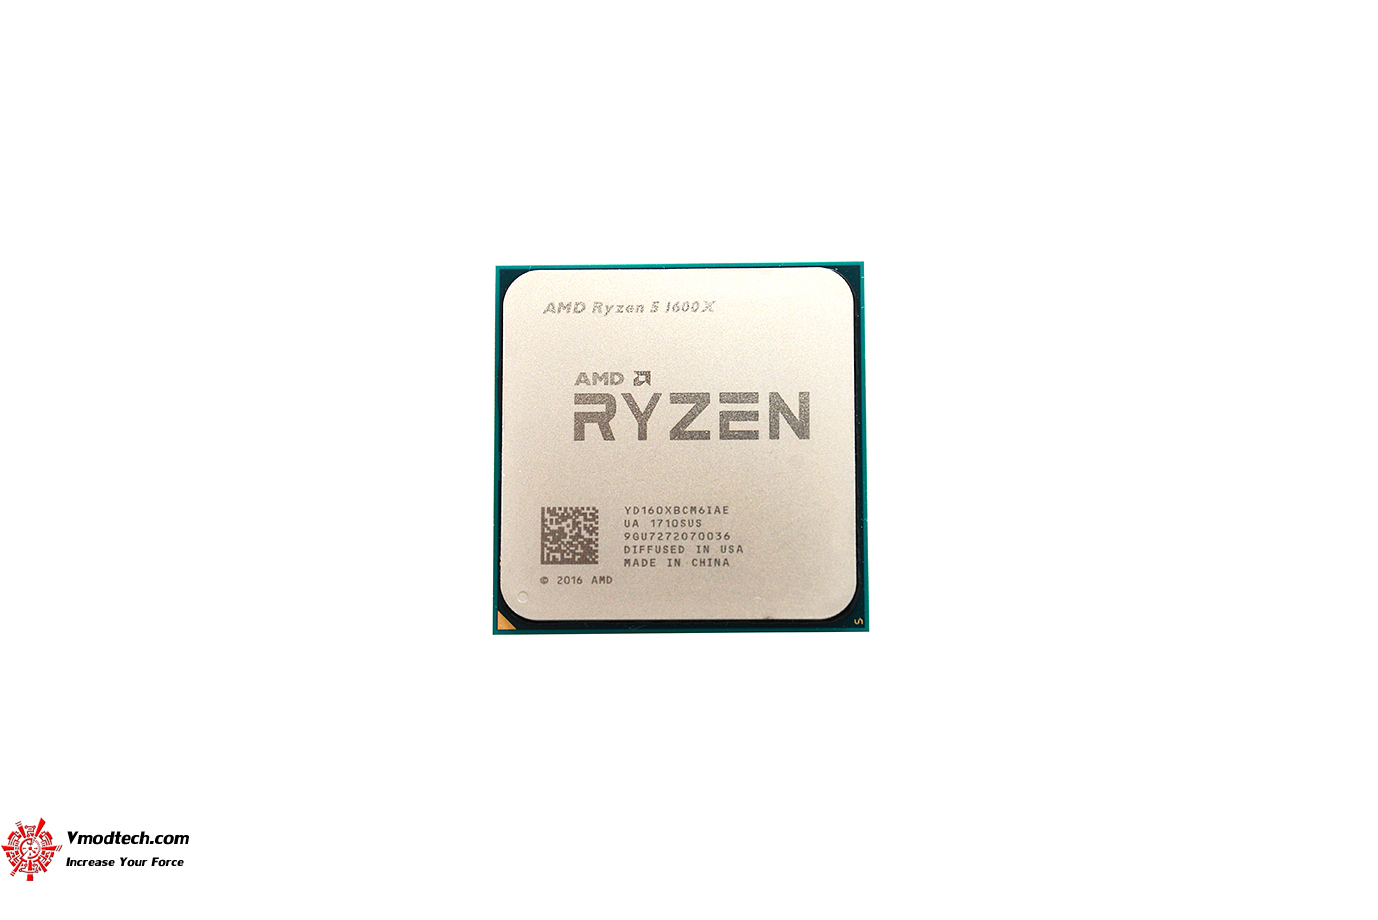 dsc 6590 AMD RYZEN 5 1600X Review